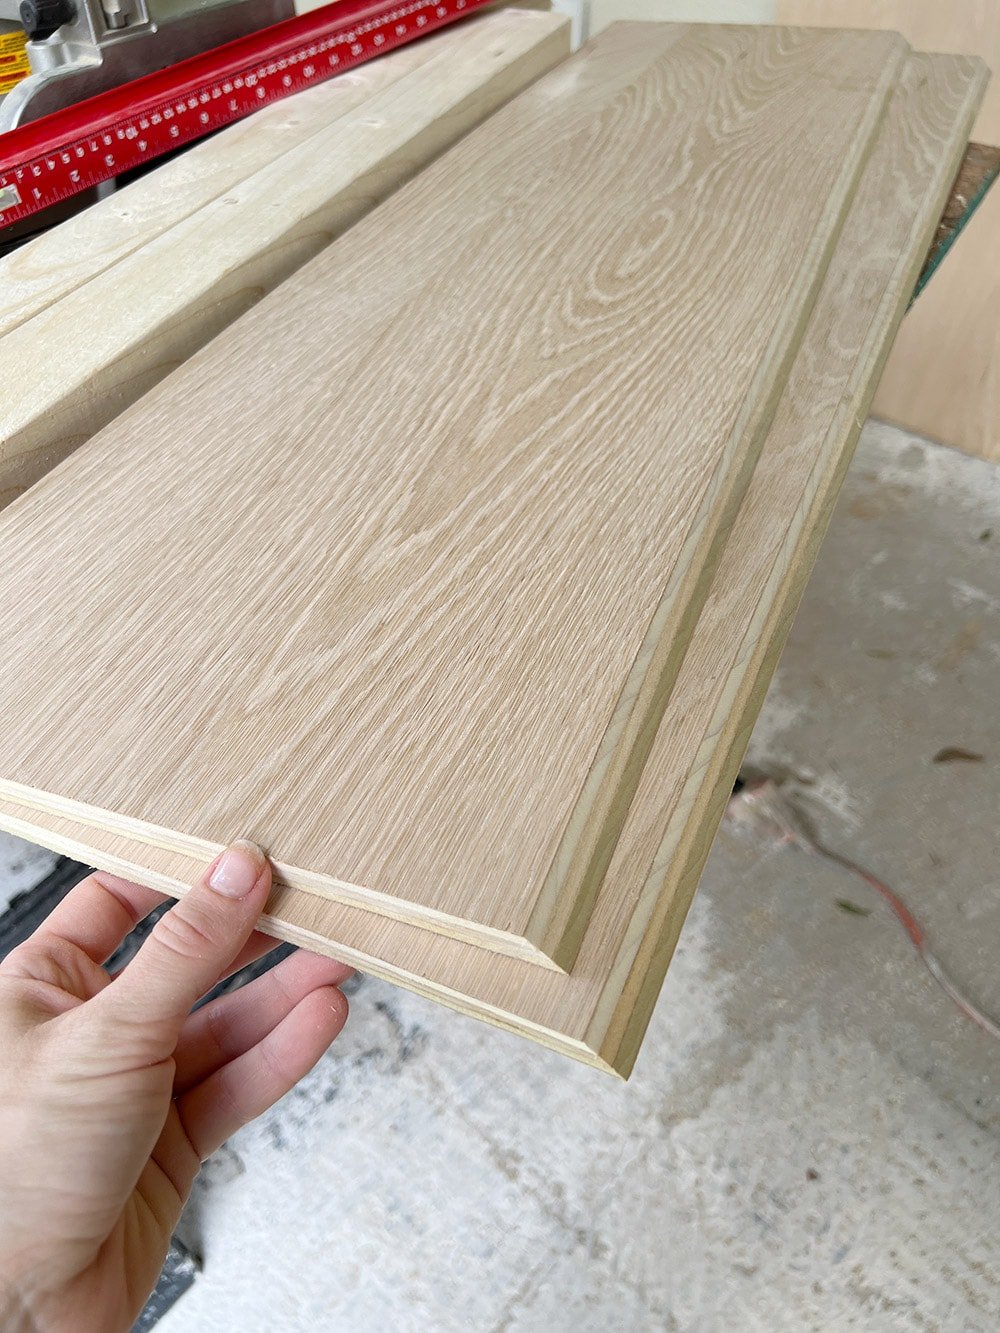 1/2" white oak plywood